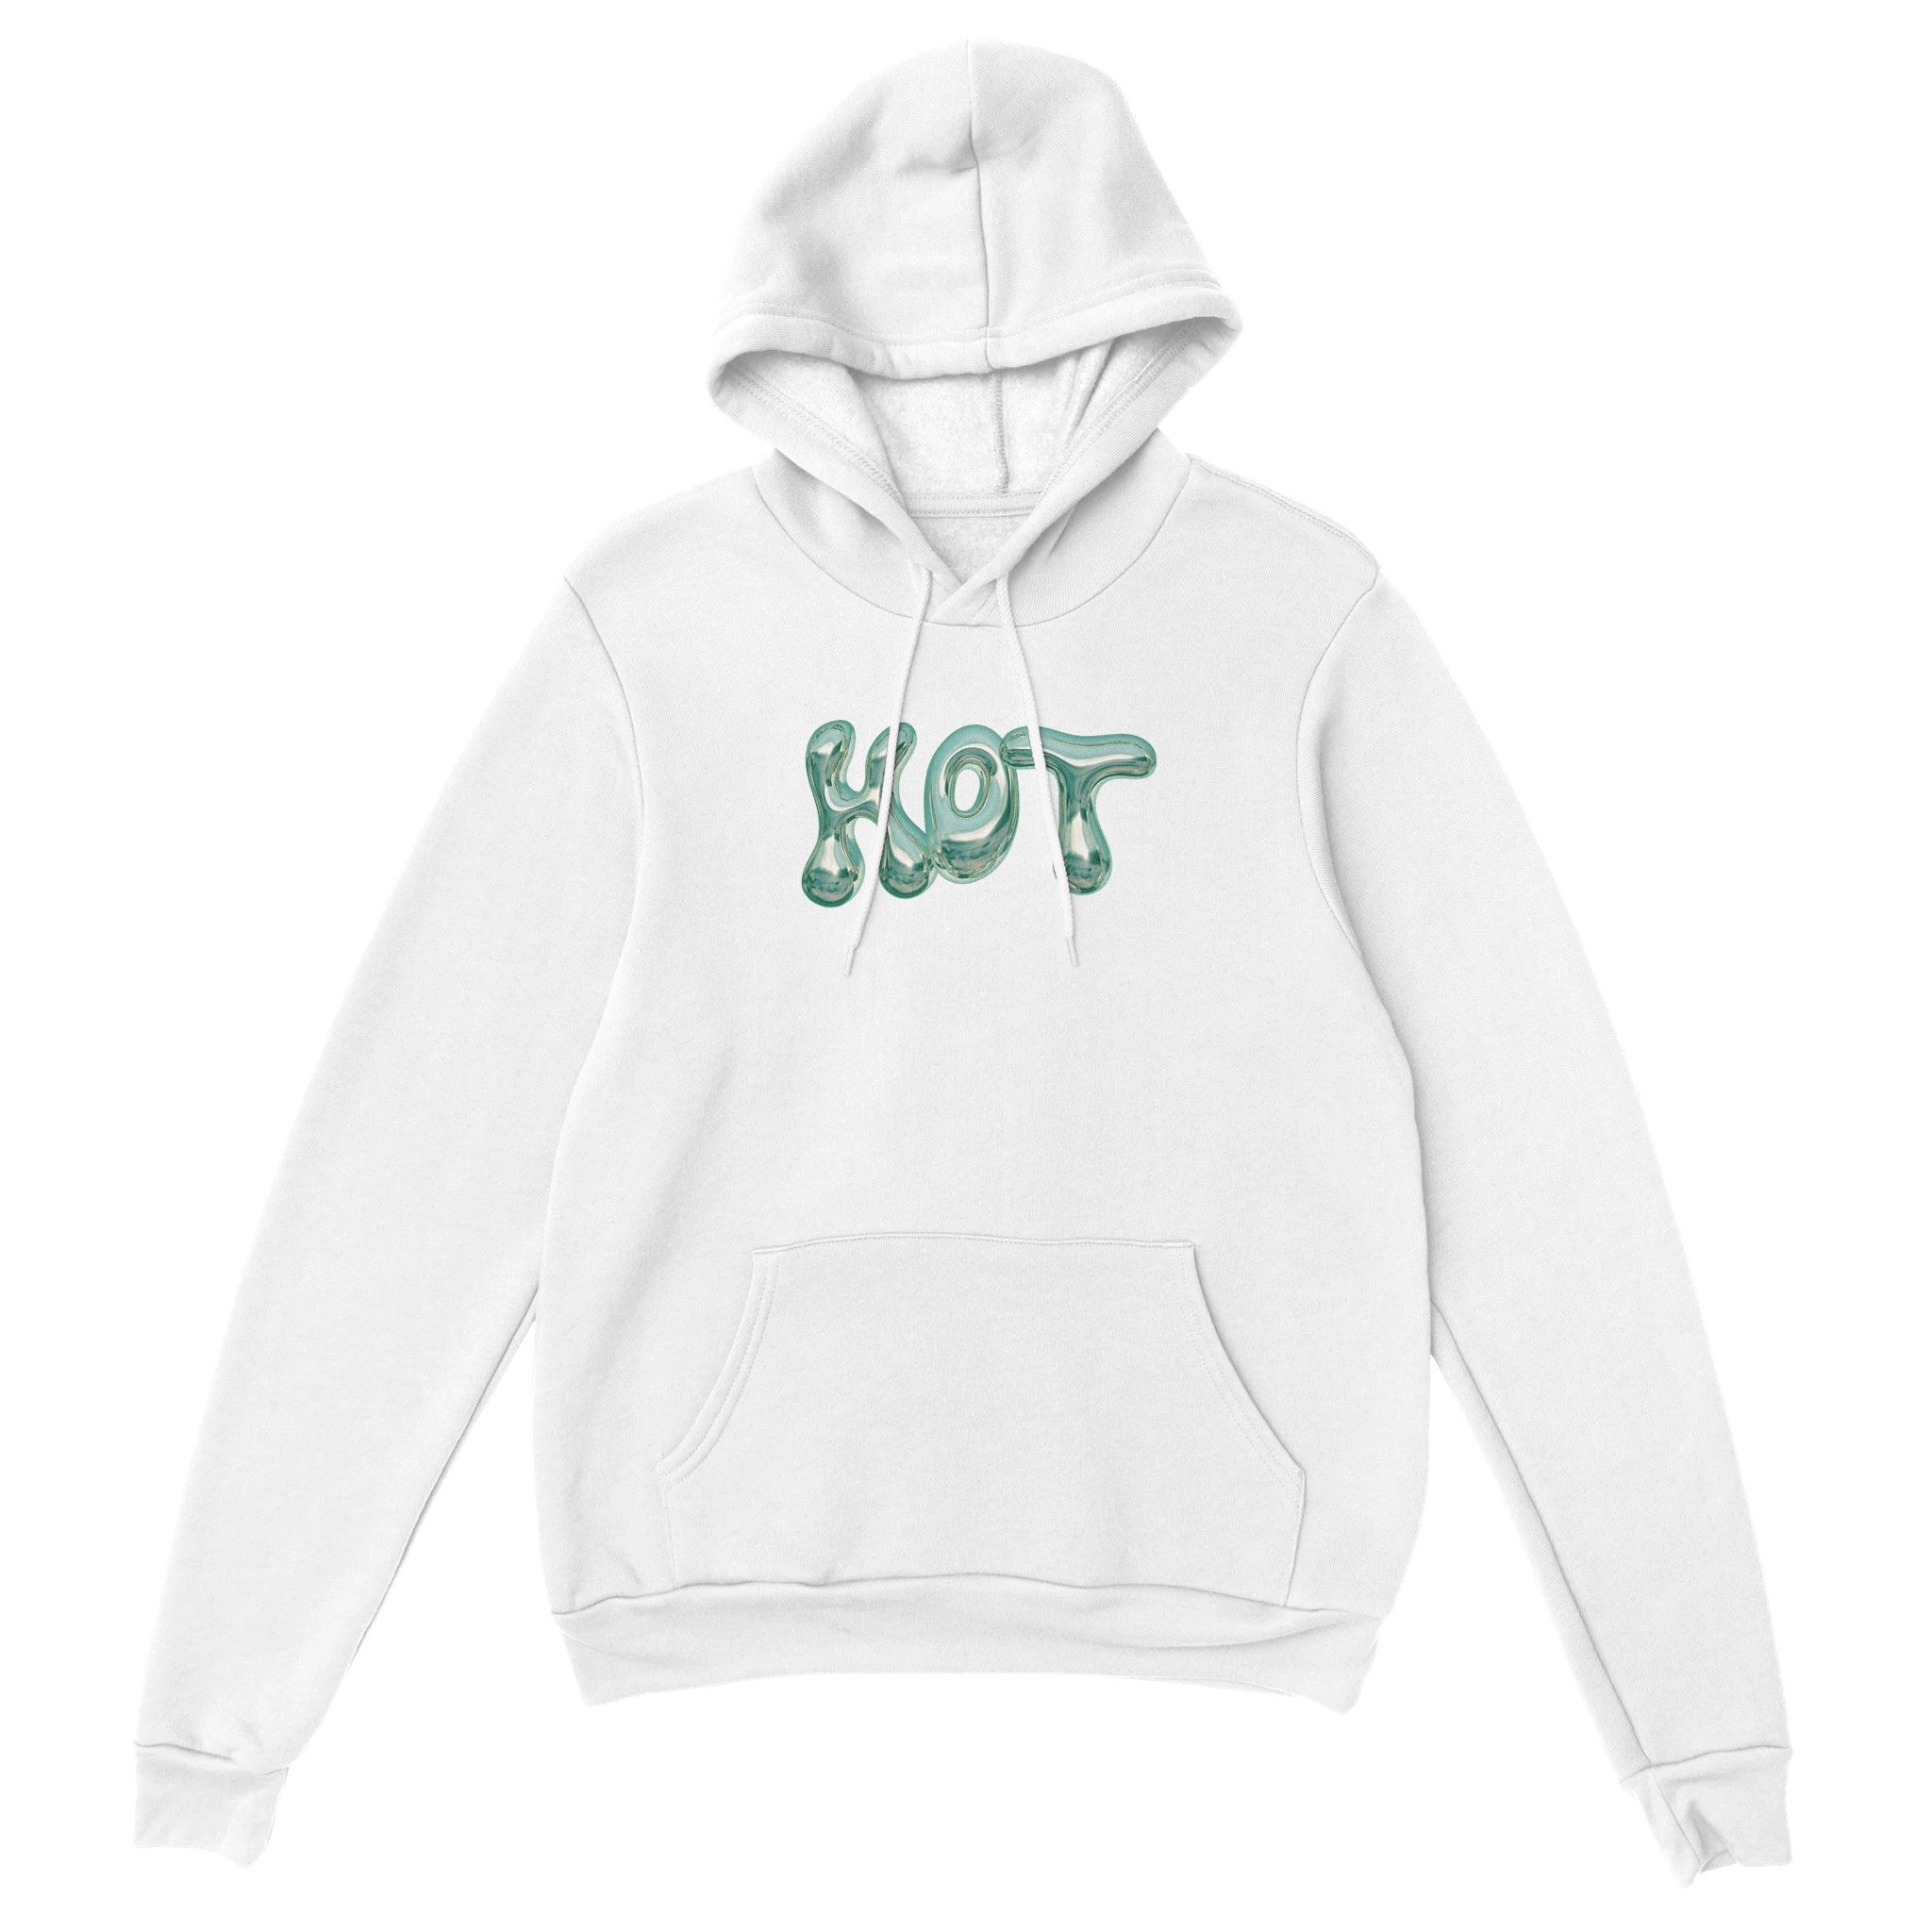 'Hot' hoodie - In Print We Trust